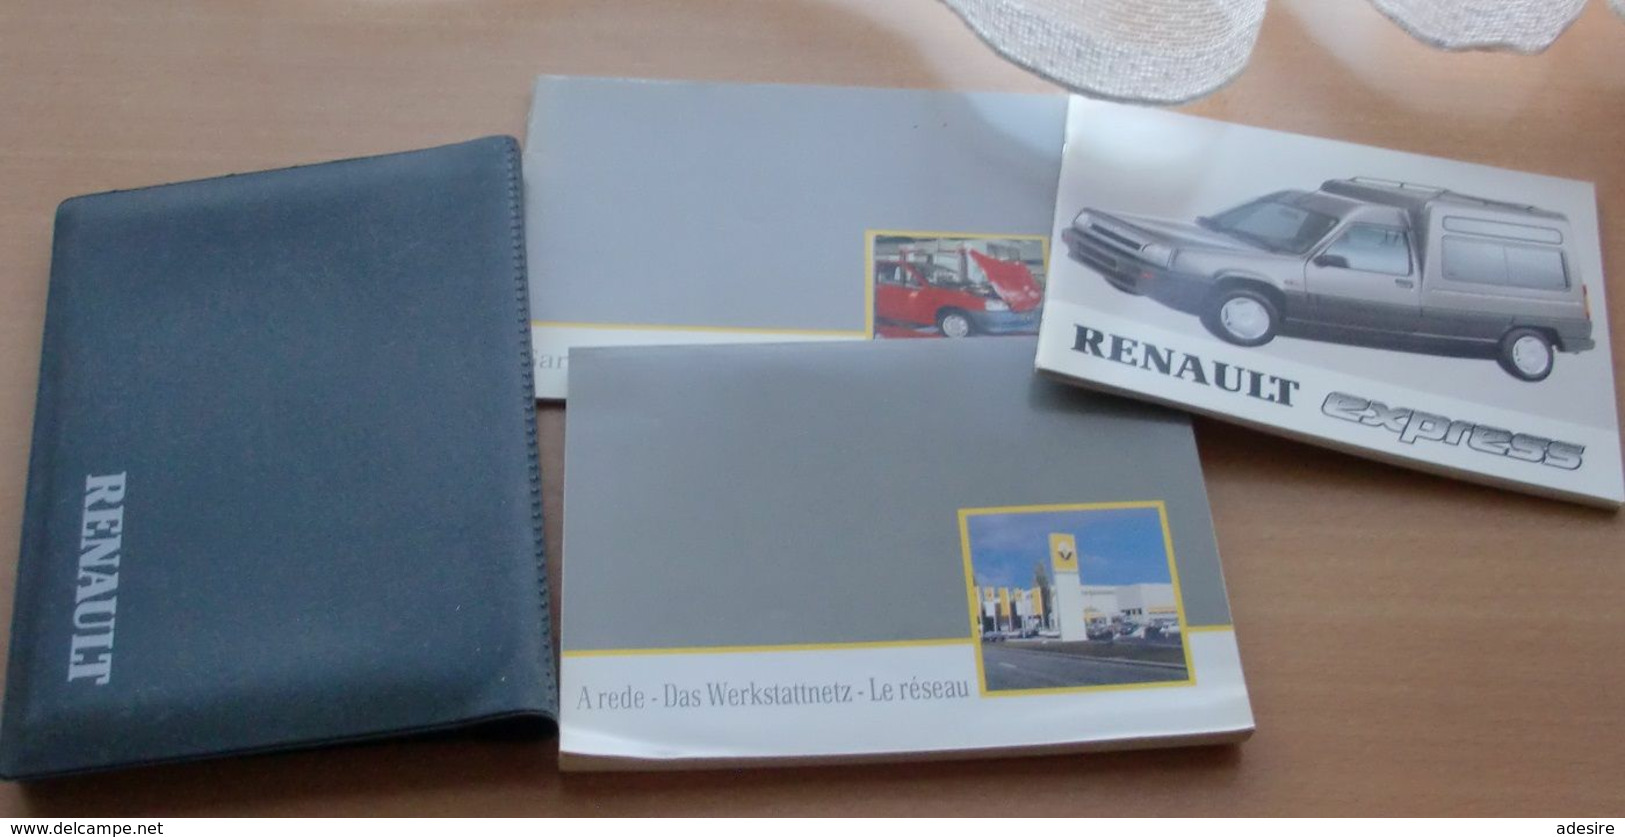 RENAULT EXPRESS (Bedienungs Und Wartungsanleitung, Werkstattennetz, Garantie + Wartung), 3 Bücher In Dazugehöriger Mappe - Shop-Manuals